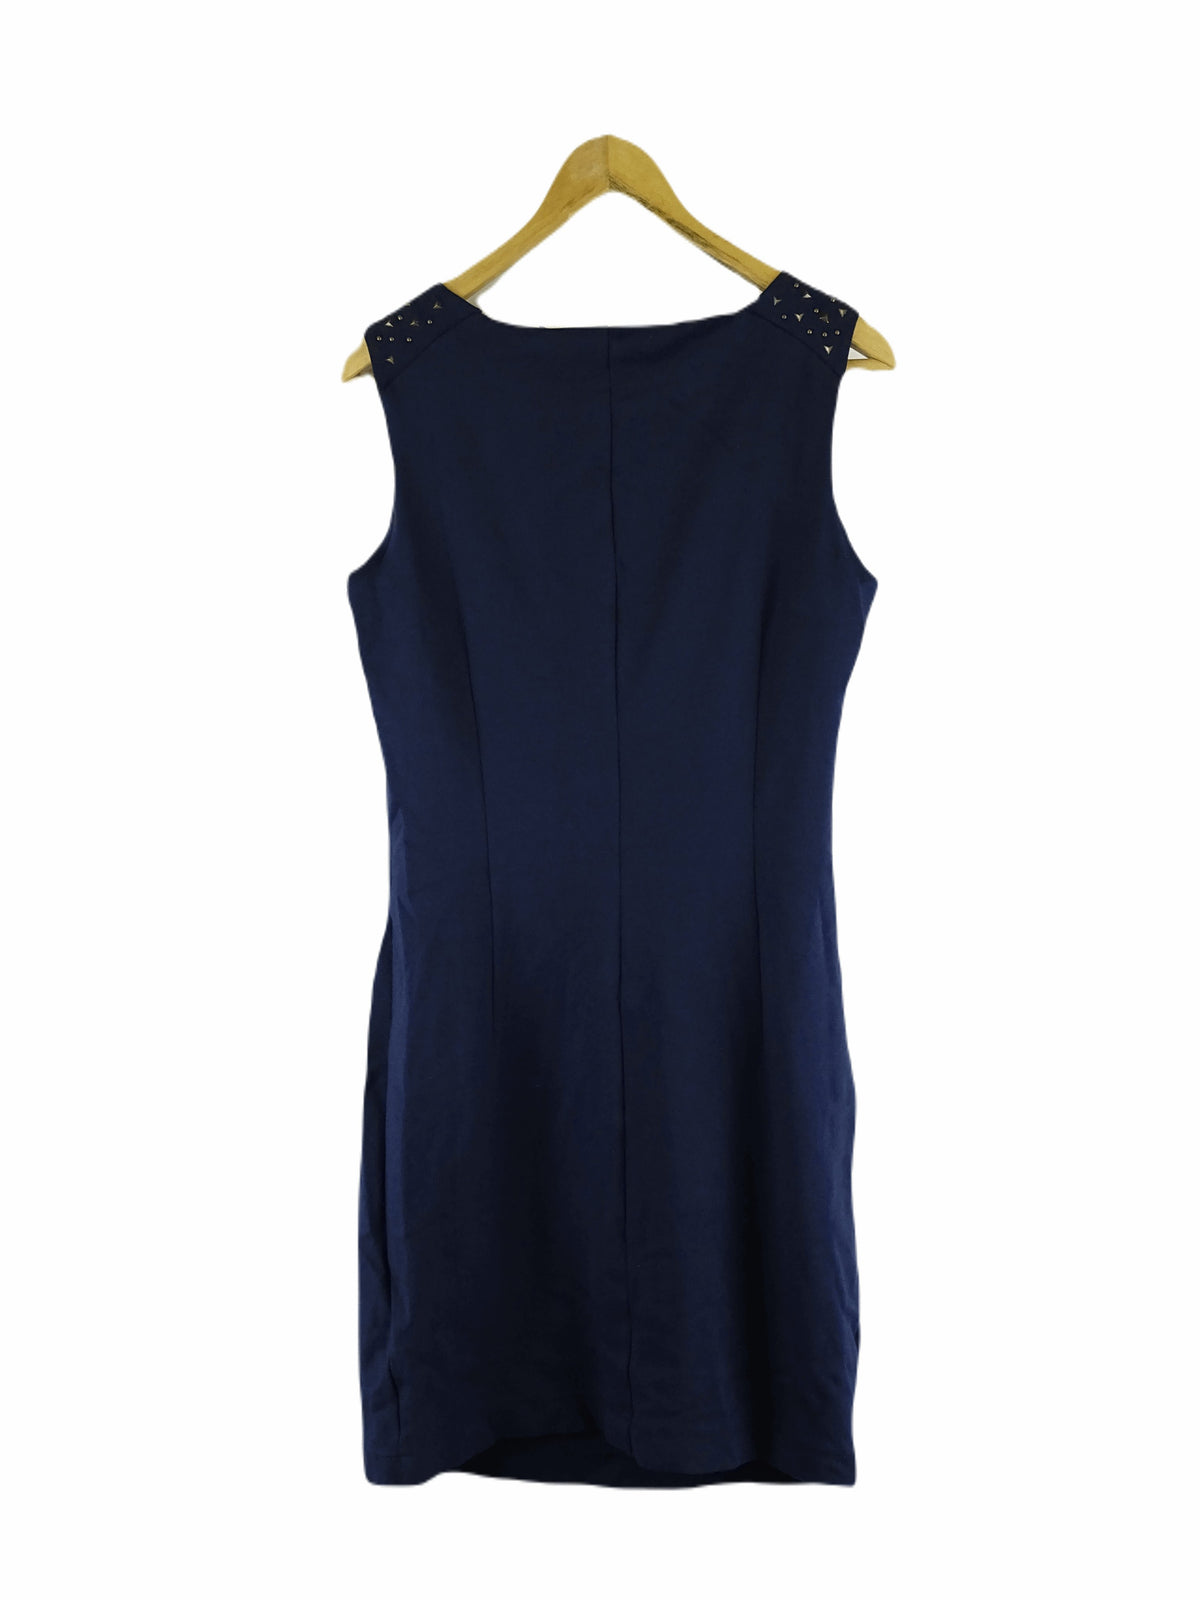 Esprit Navy Mini Dress XL